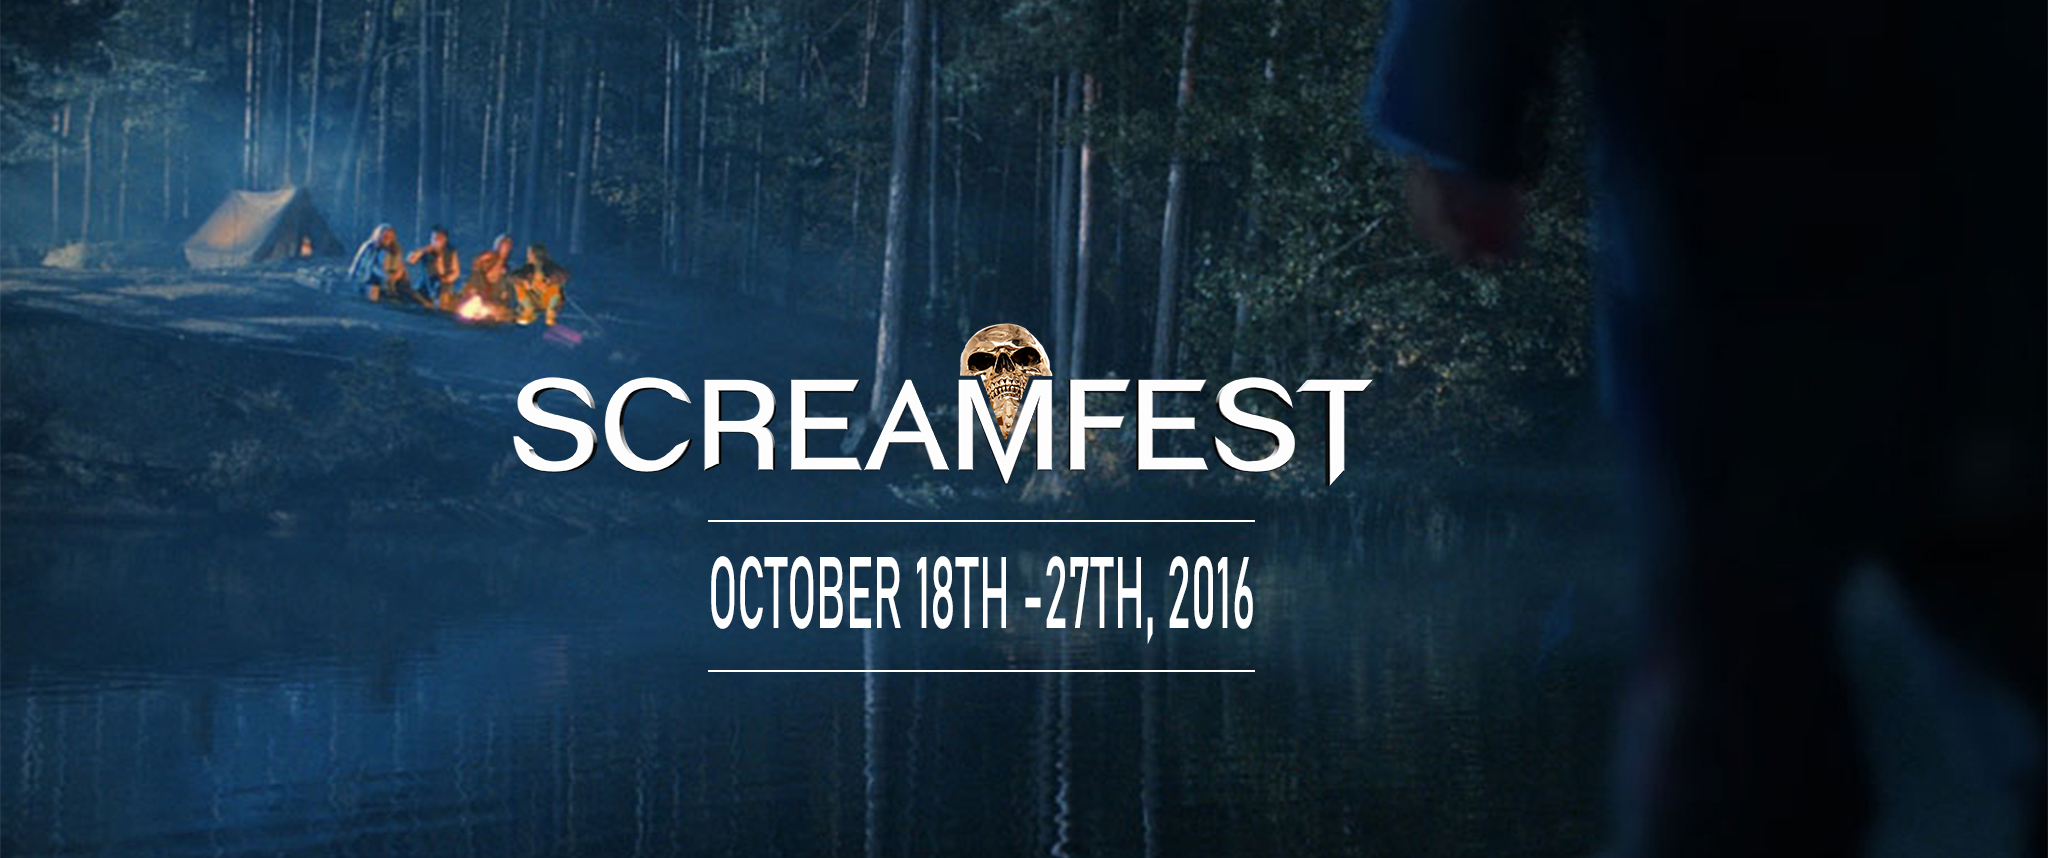 Screamfest 2016